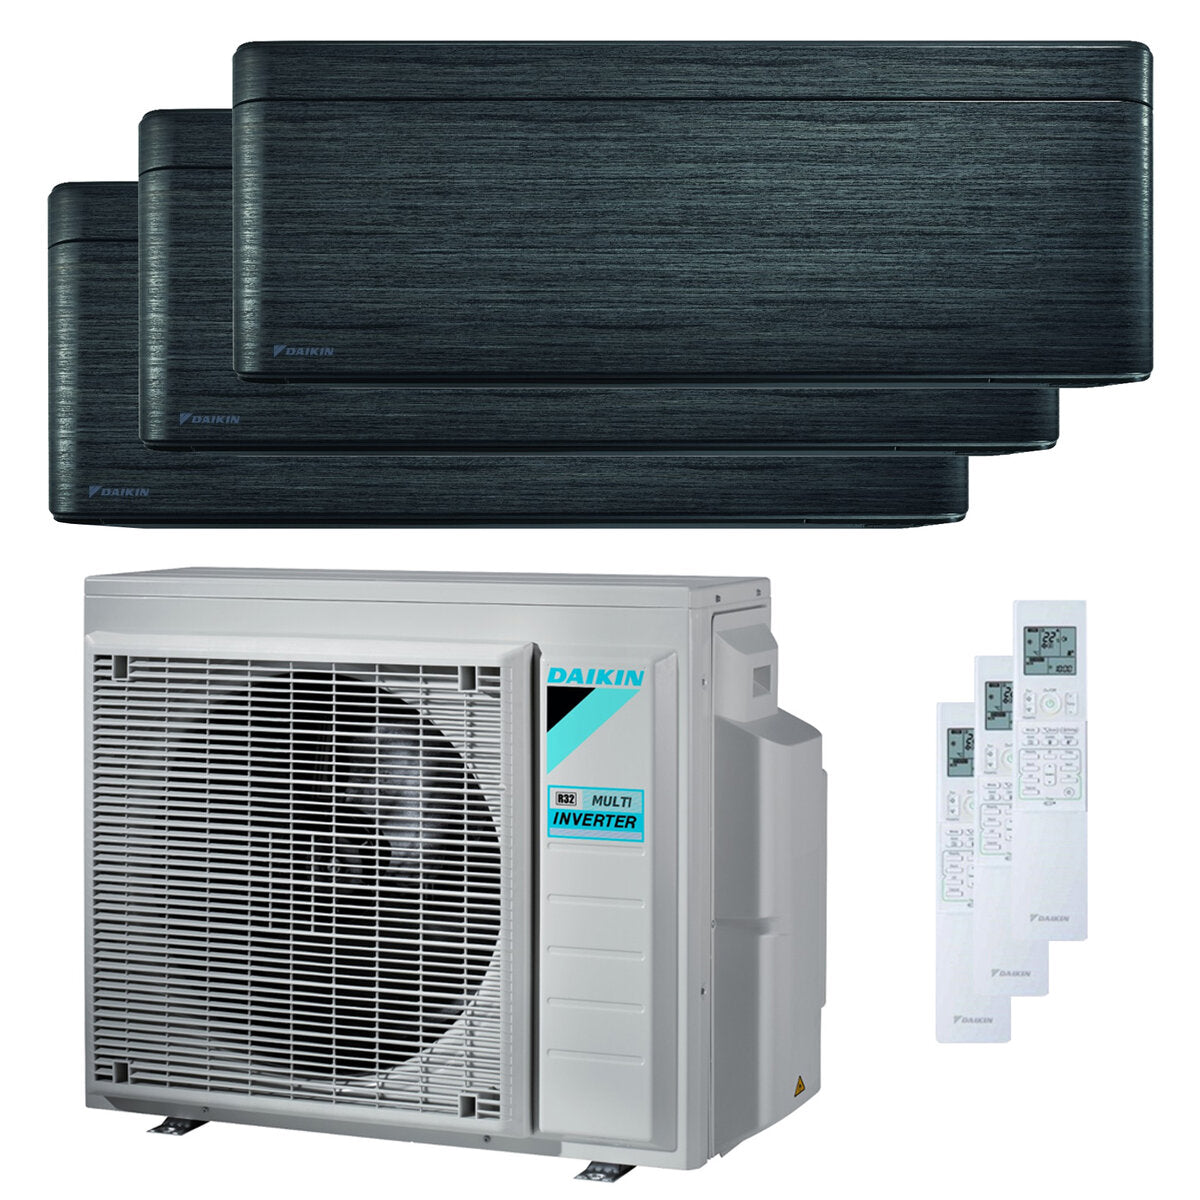 Daikin Stylish Trial Split Klimaanlage 5000 + 9000 + 18000 BTU Inverter A++ WLAN Außengerät 6,8 kW